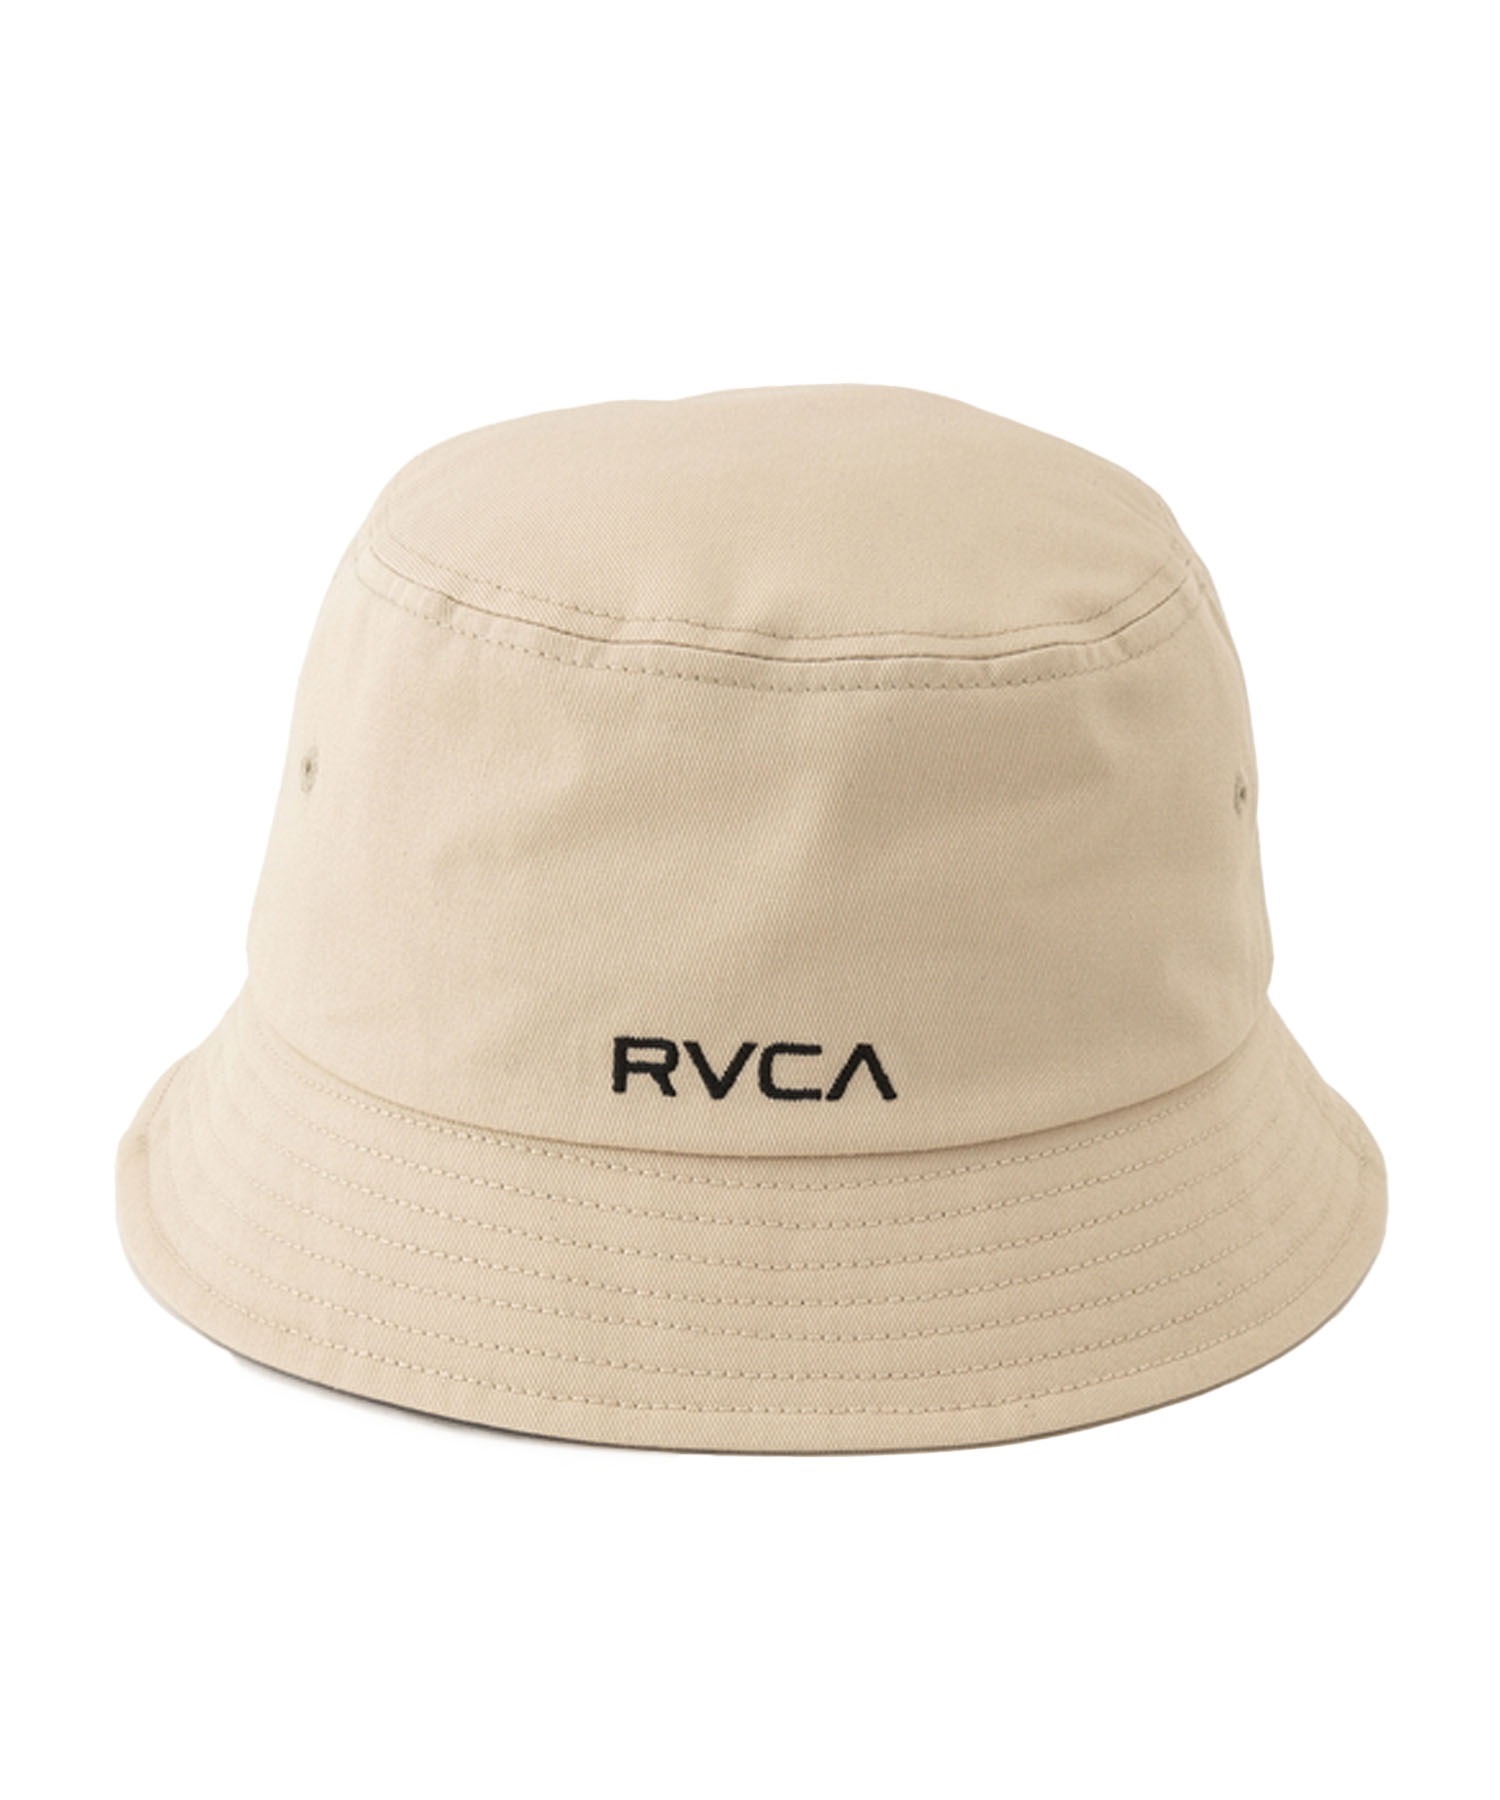 RVCA/ルーカ BUCKET HAT バケットハット バケハ メンズ BE041-930(BLK-FREE)